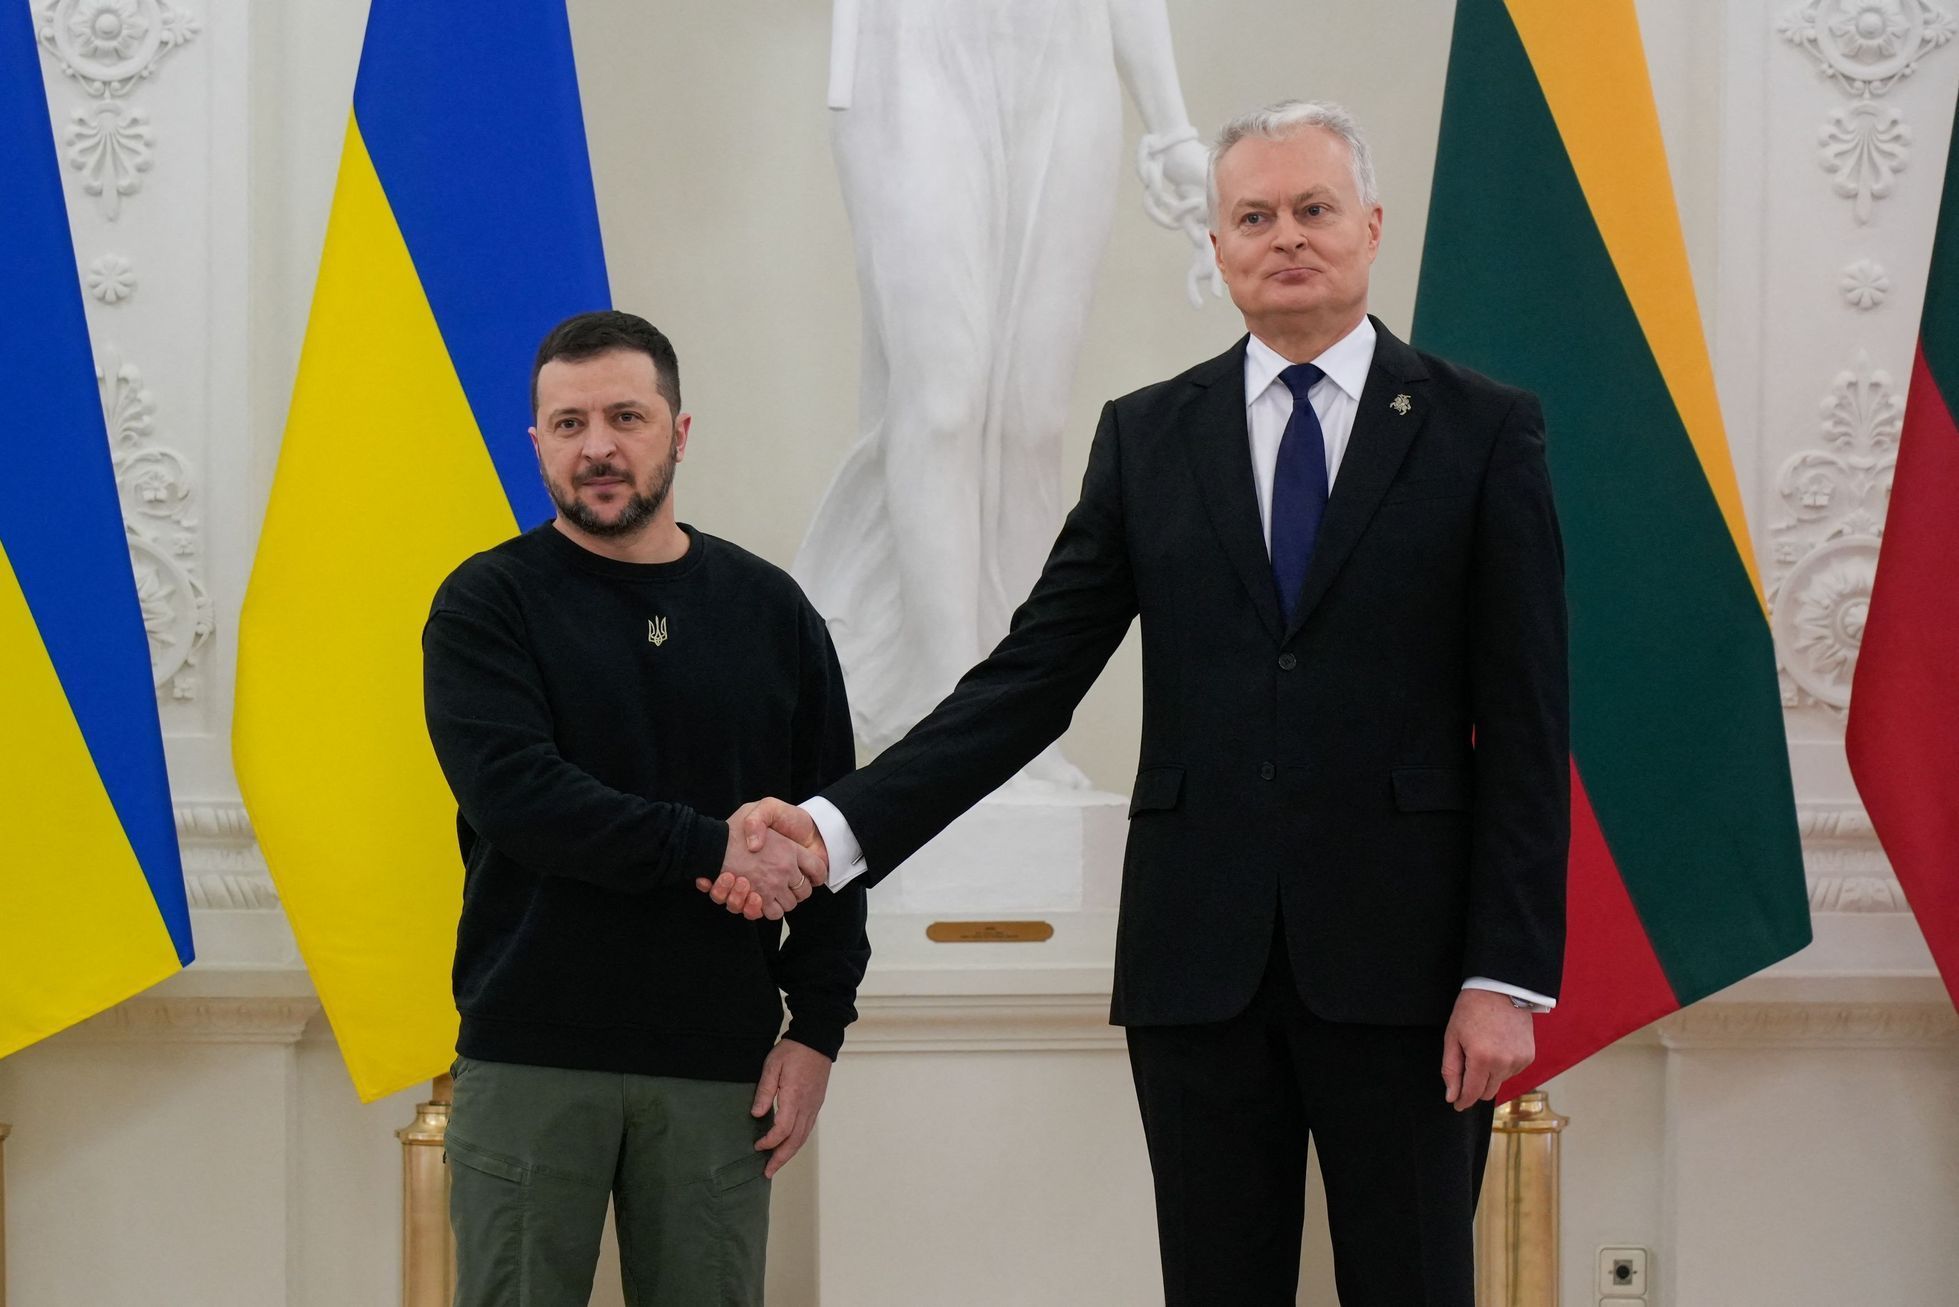 Prezidenti Ukrajiny a Litvy Volodymyr Zelenskyj a Gitanas Nauseda.